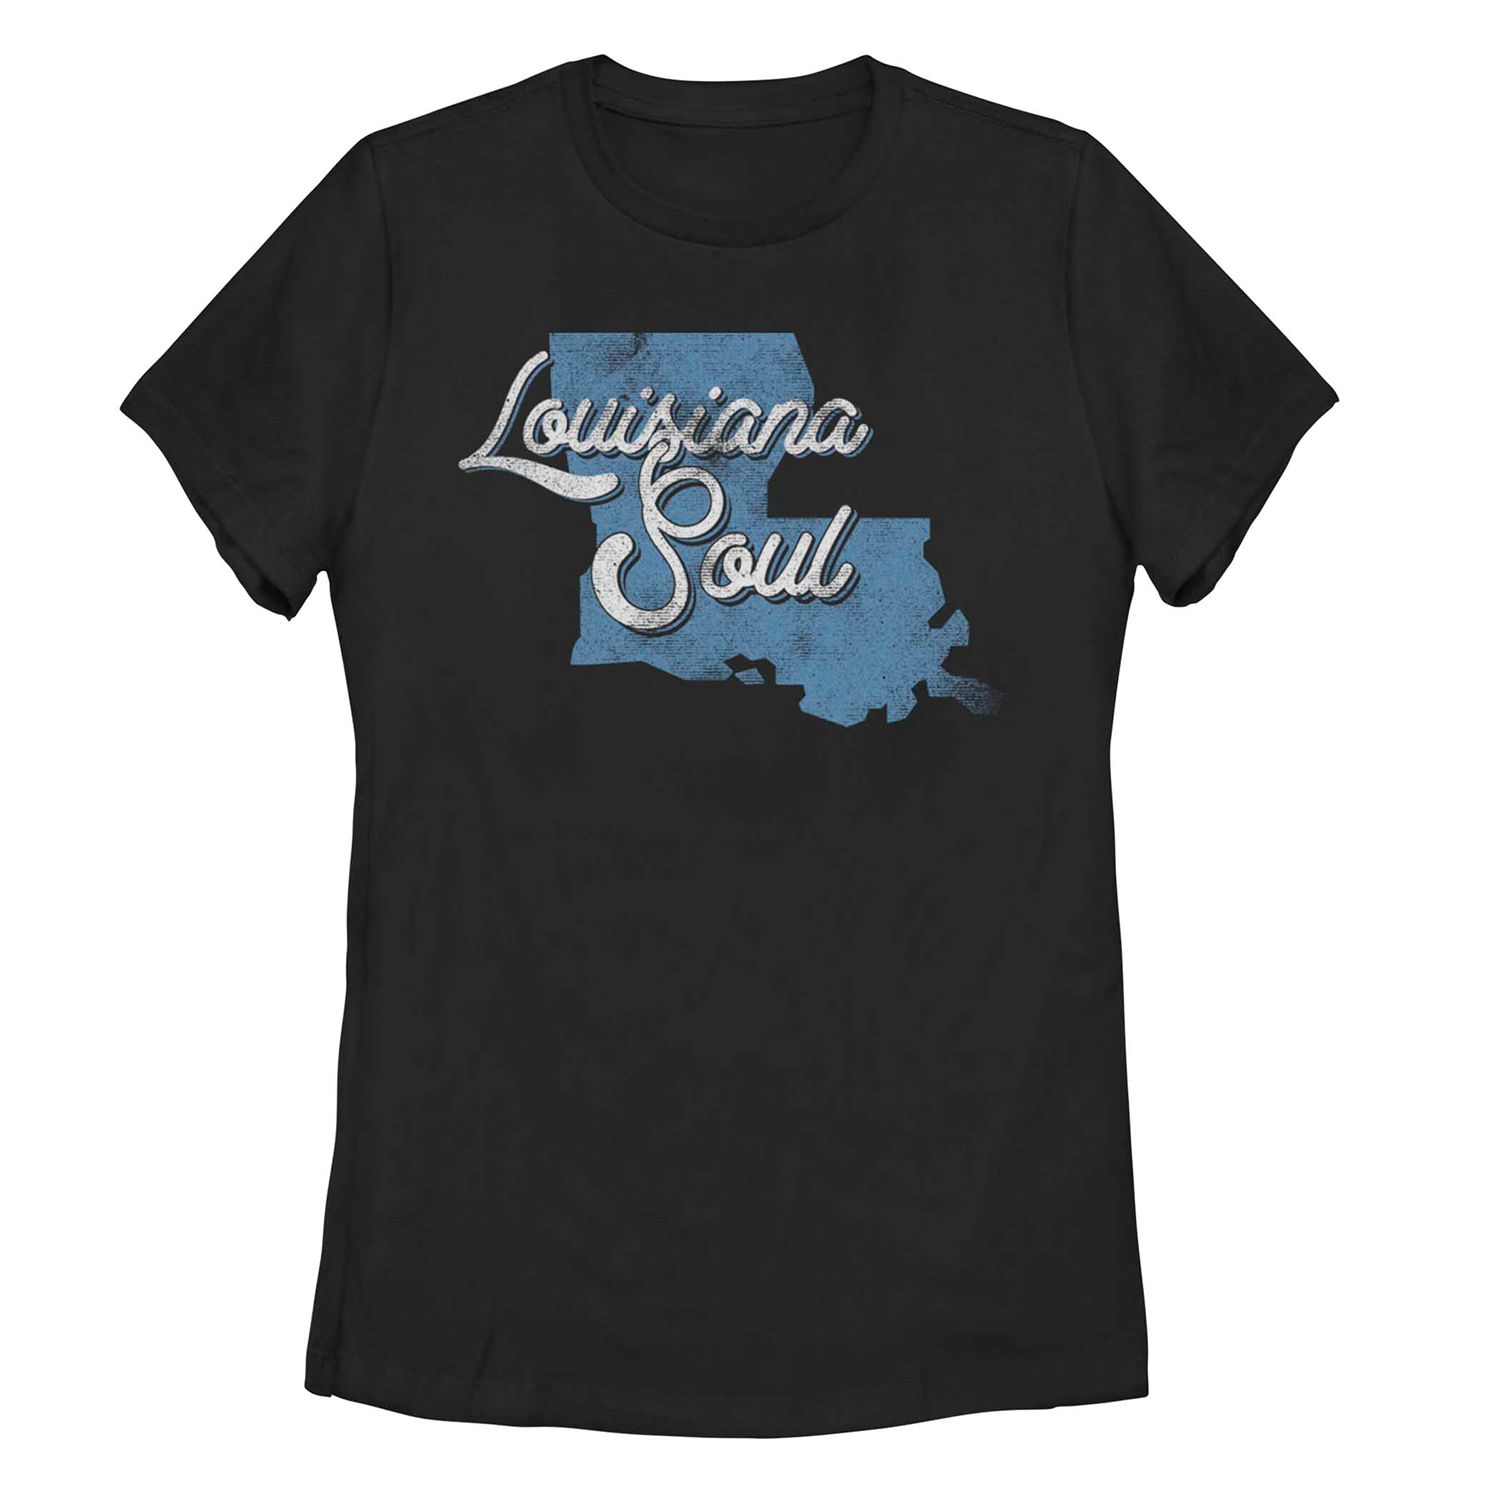 Детская футболка с винтажным рисунком Louisiana Soul